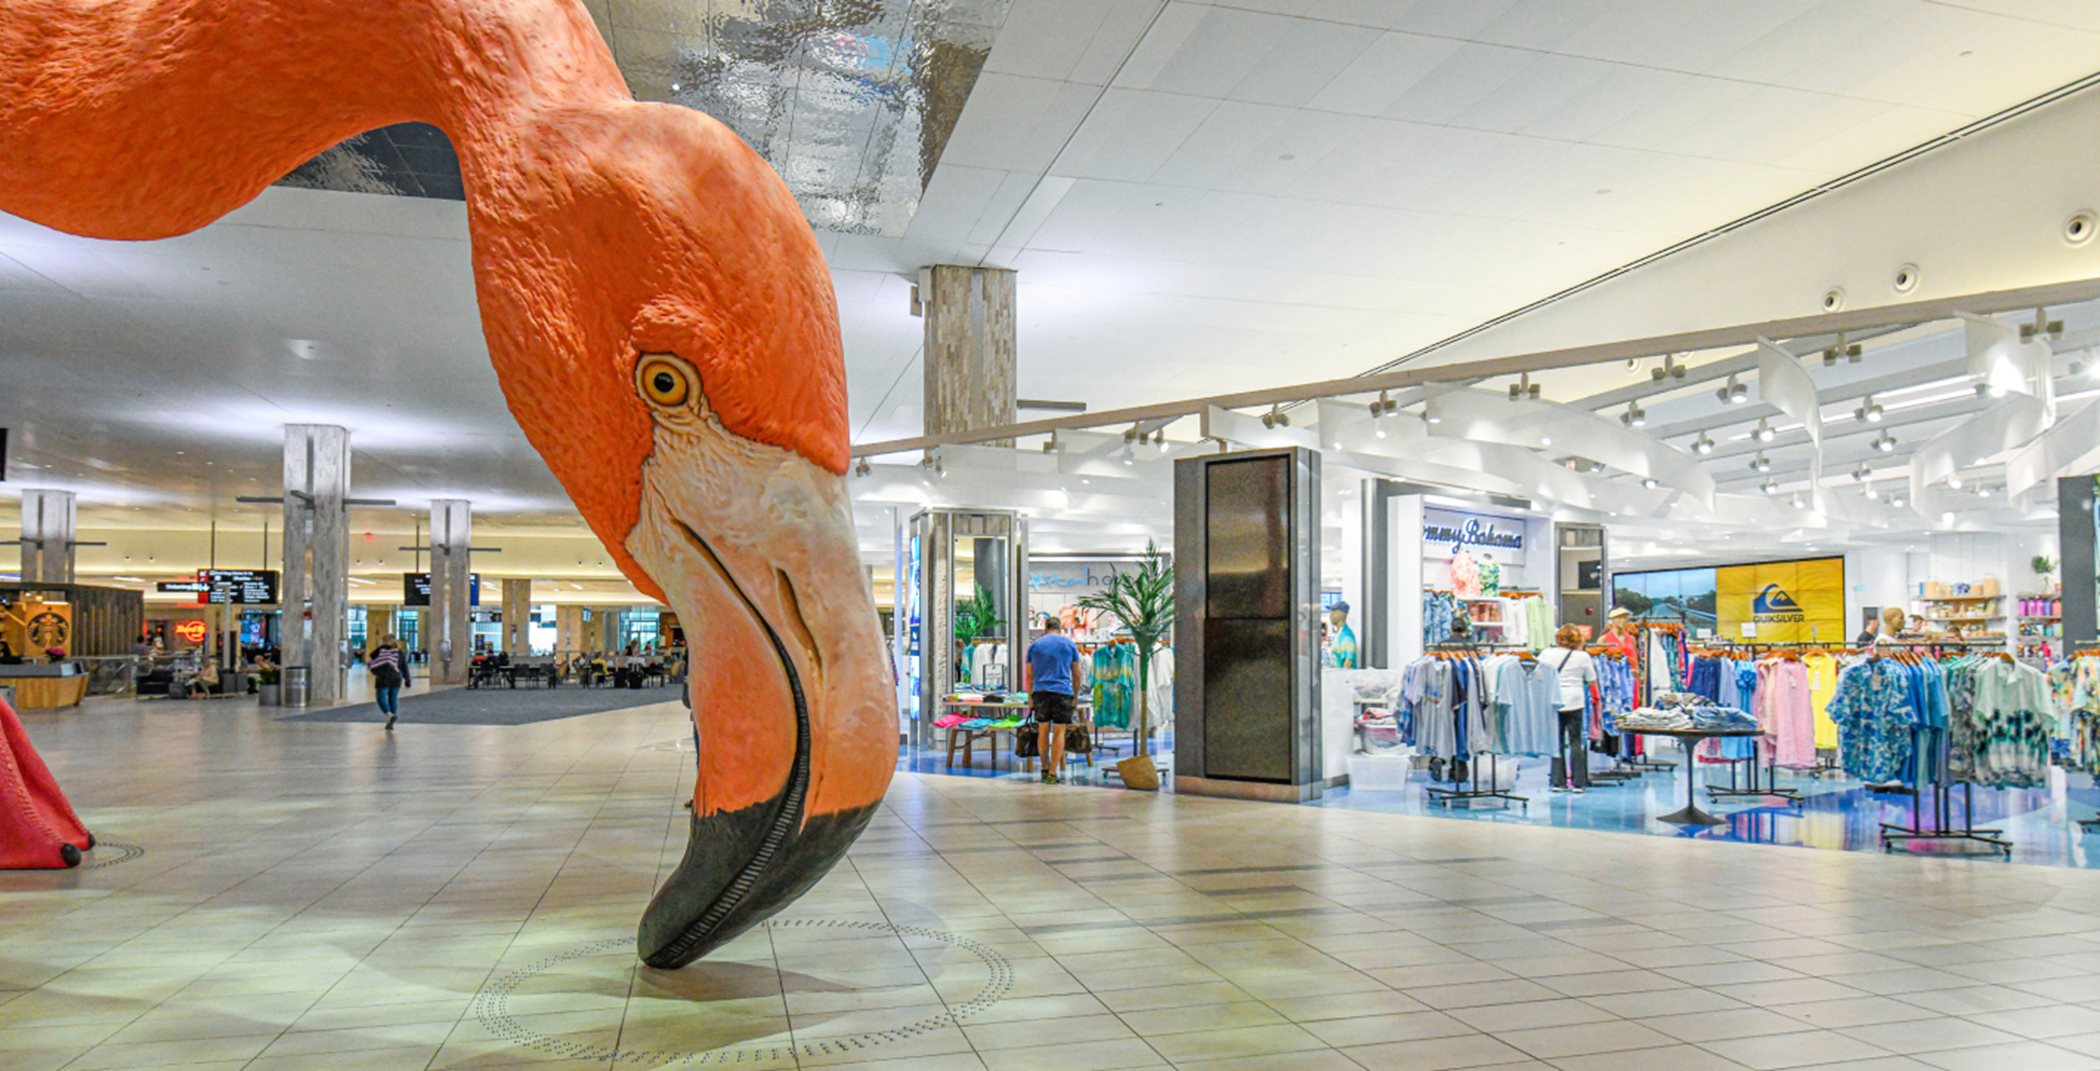 Flamingo in Tampa airport